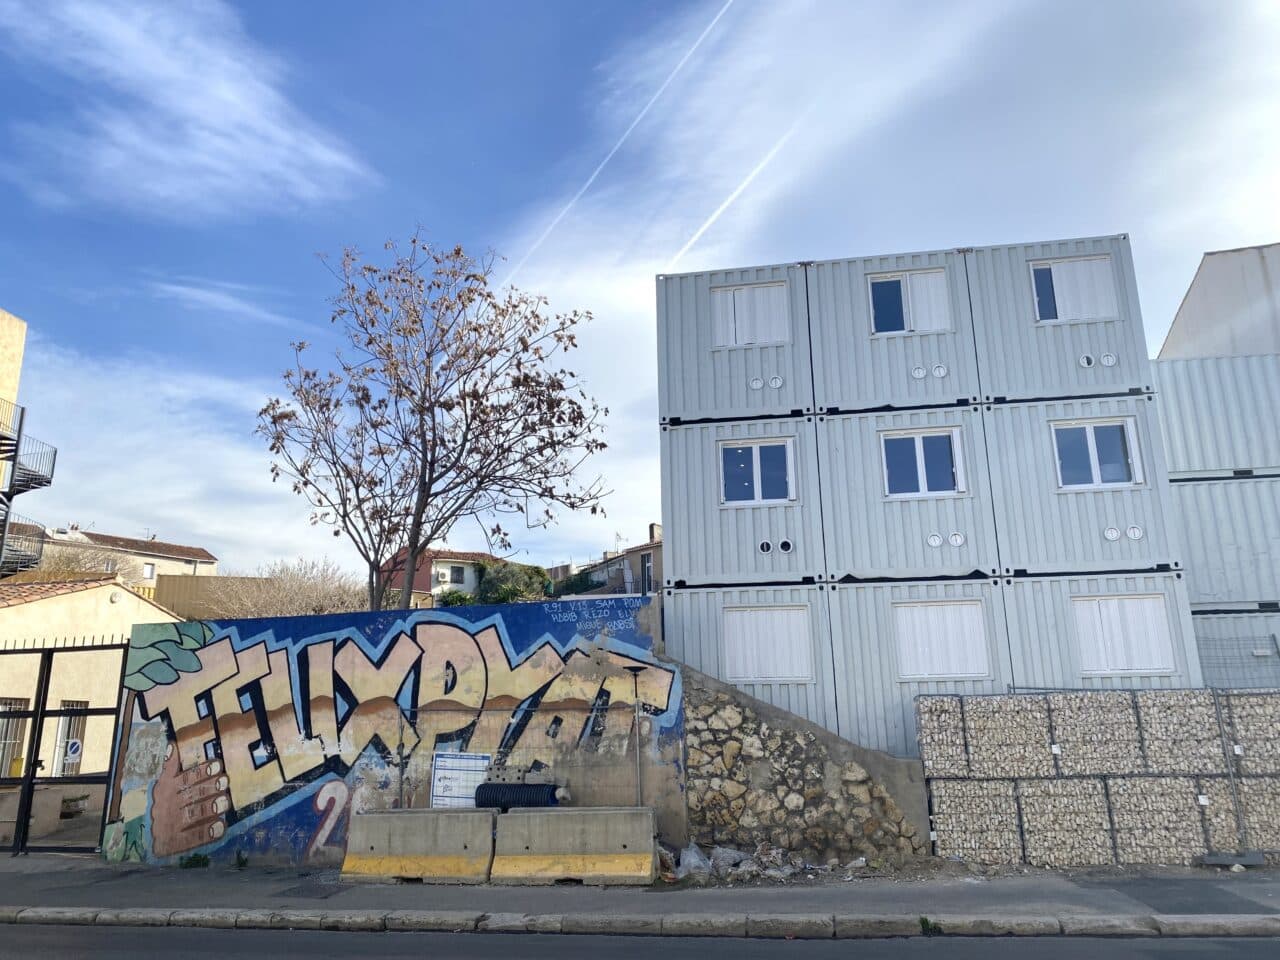 conteneurs, À Félix Pyat, un refuge pour les femmes sans-abri dans des conteneurs aménagés, Made in Marseille